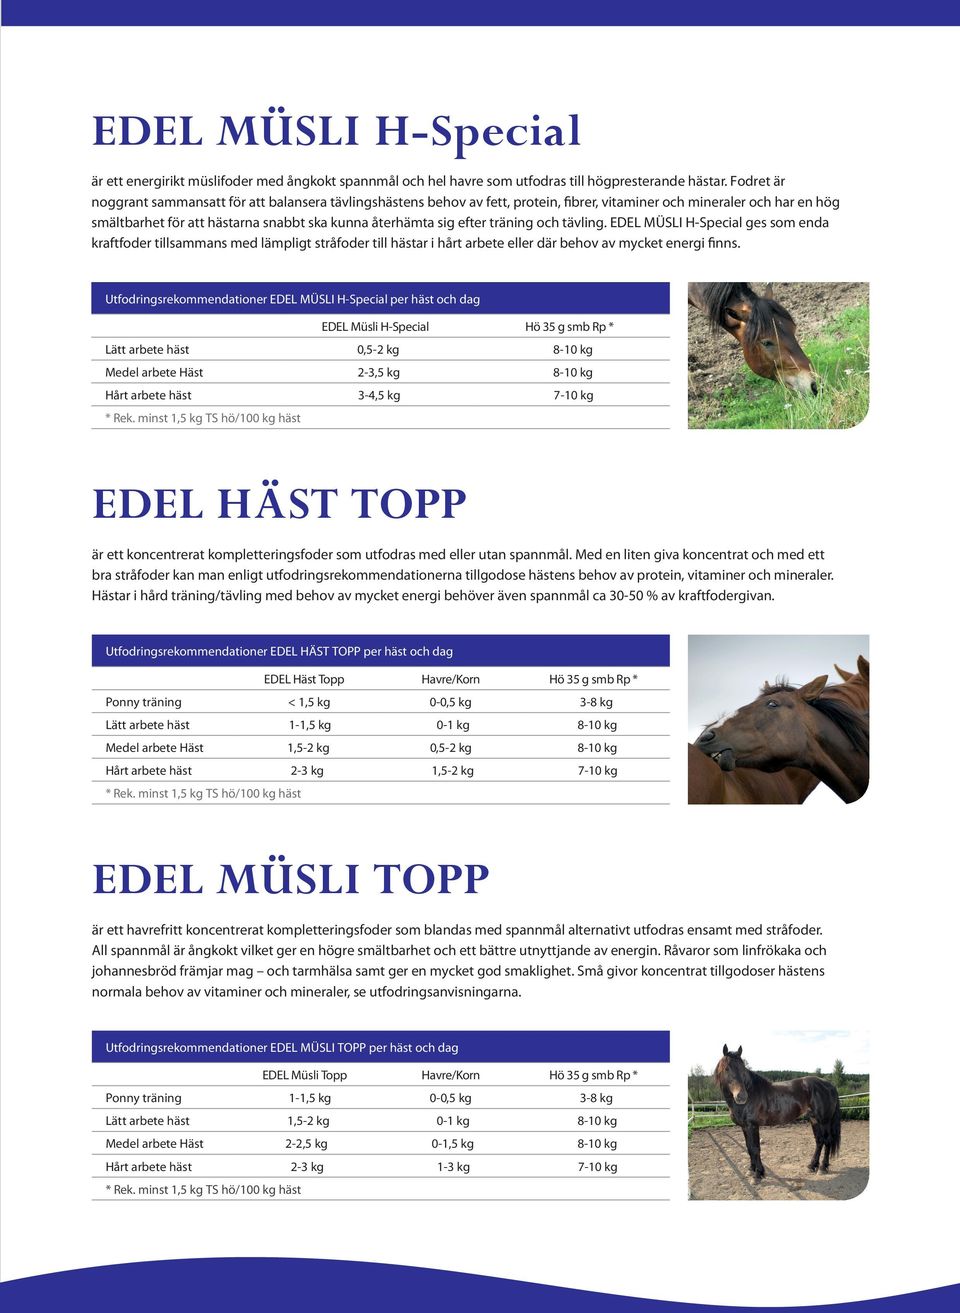 tränin och tävlin. EDEL MÜSLI H-Special es som enda kraftfoder tillsammans med lämplit stråfoder till hästar i hårt arbete eller där behov av mycket eneri finns.